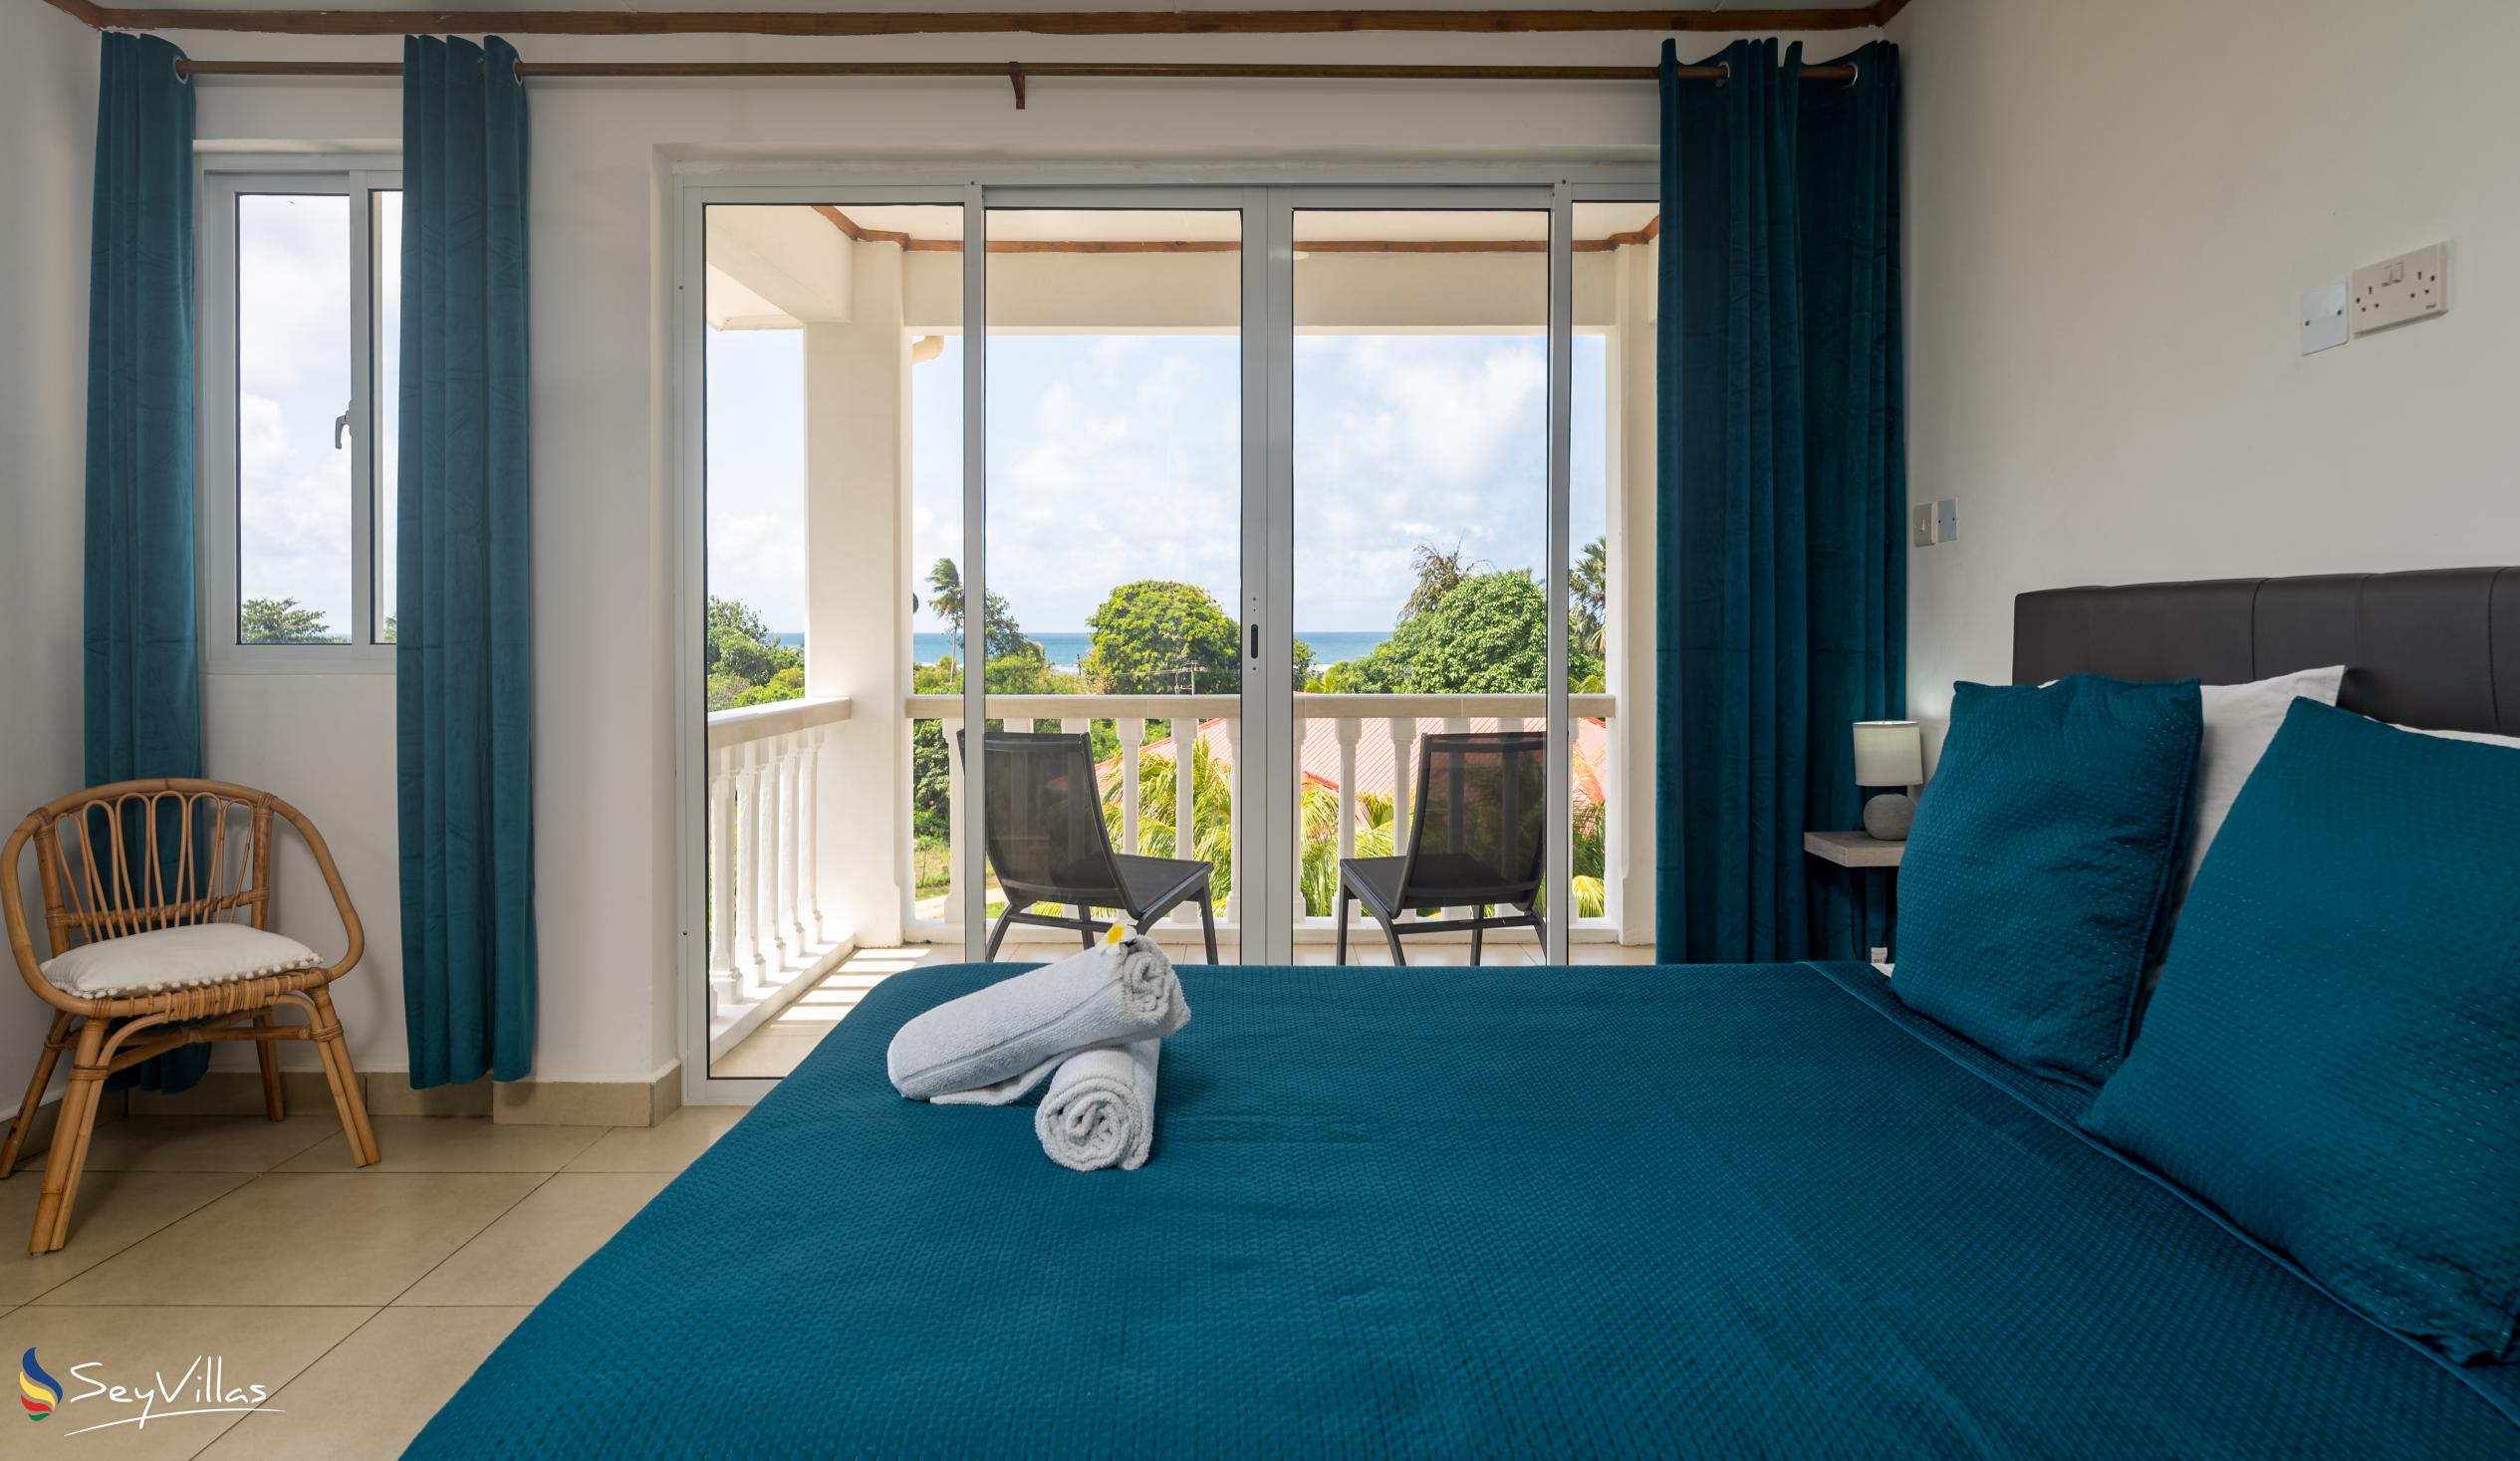 Photo 79: Cap Confort - 1-Bedroom Apartment - Mahé (Seychelles)